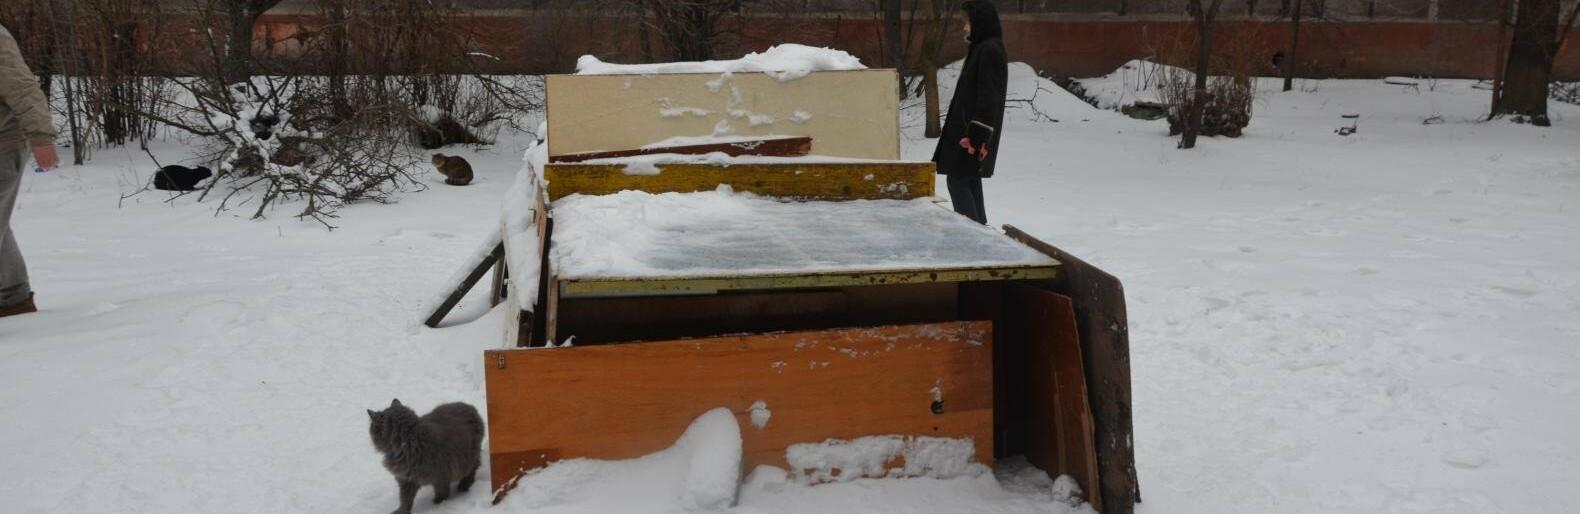 Статья Жители Мариуполя построили домик для бездомных котов из теннисного стола (фото) Утренний город. Киев